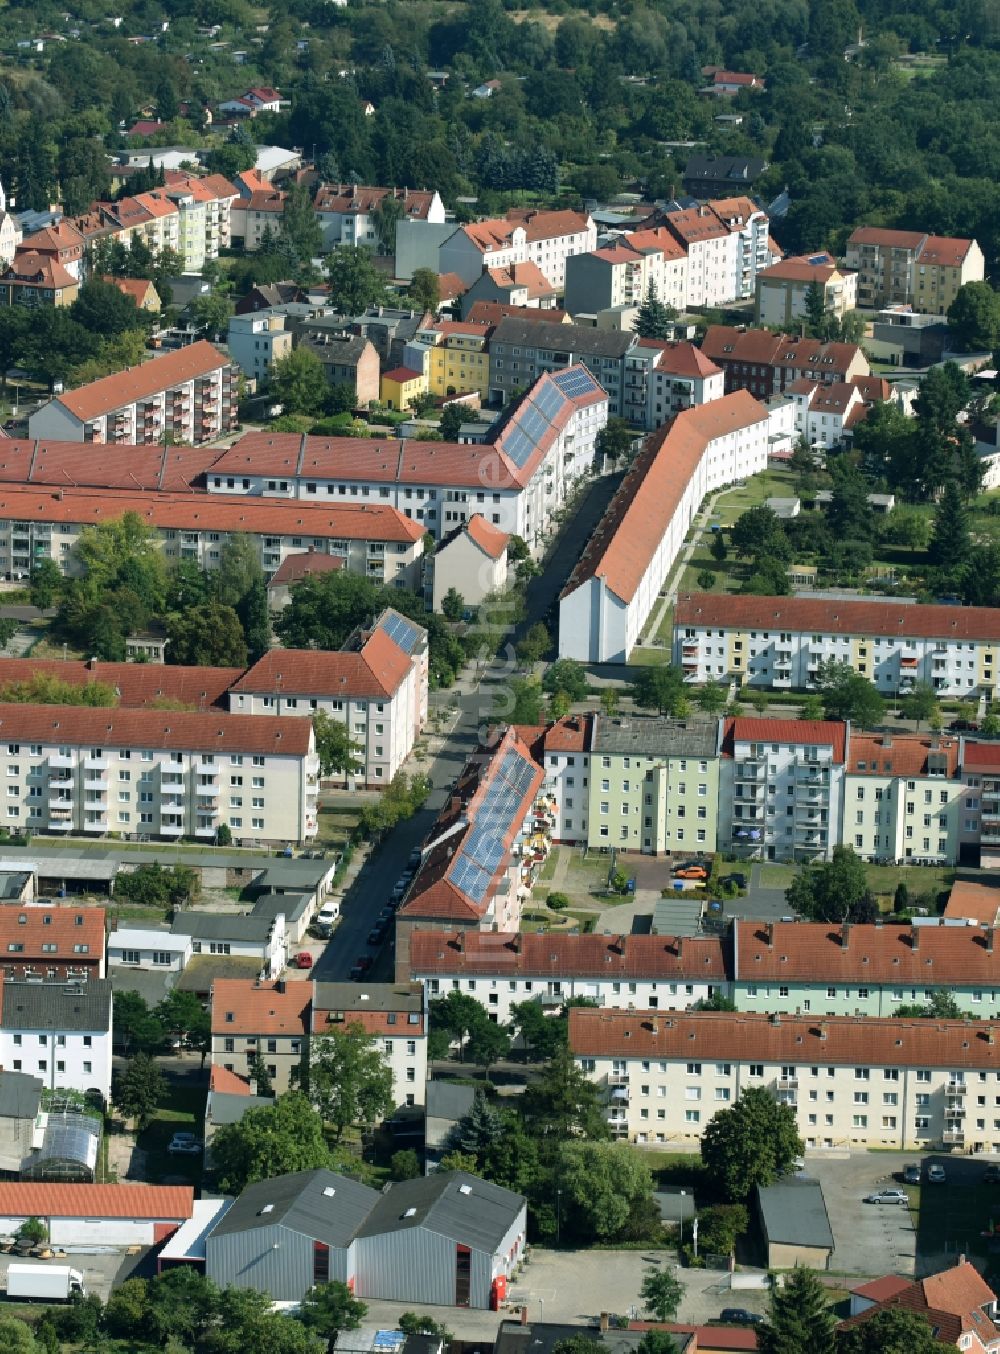 Luftbild Rathenow - Wohngebiet einer Reihenhaus- Siedlung entlang der Potsdamer Straße in Rathenow im Bundesland Brandenburg